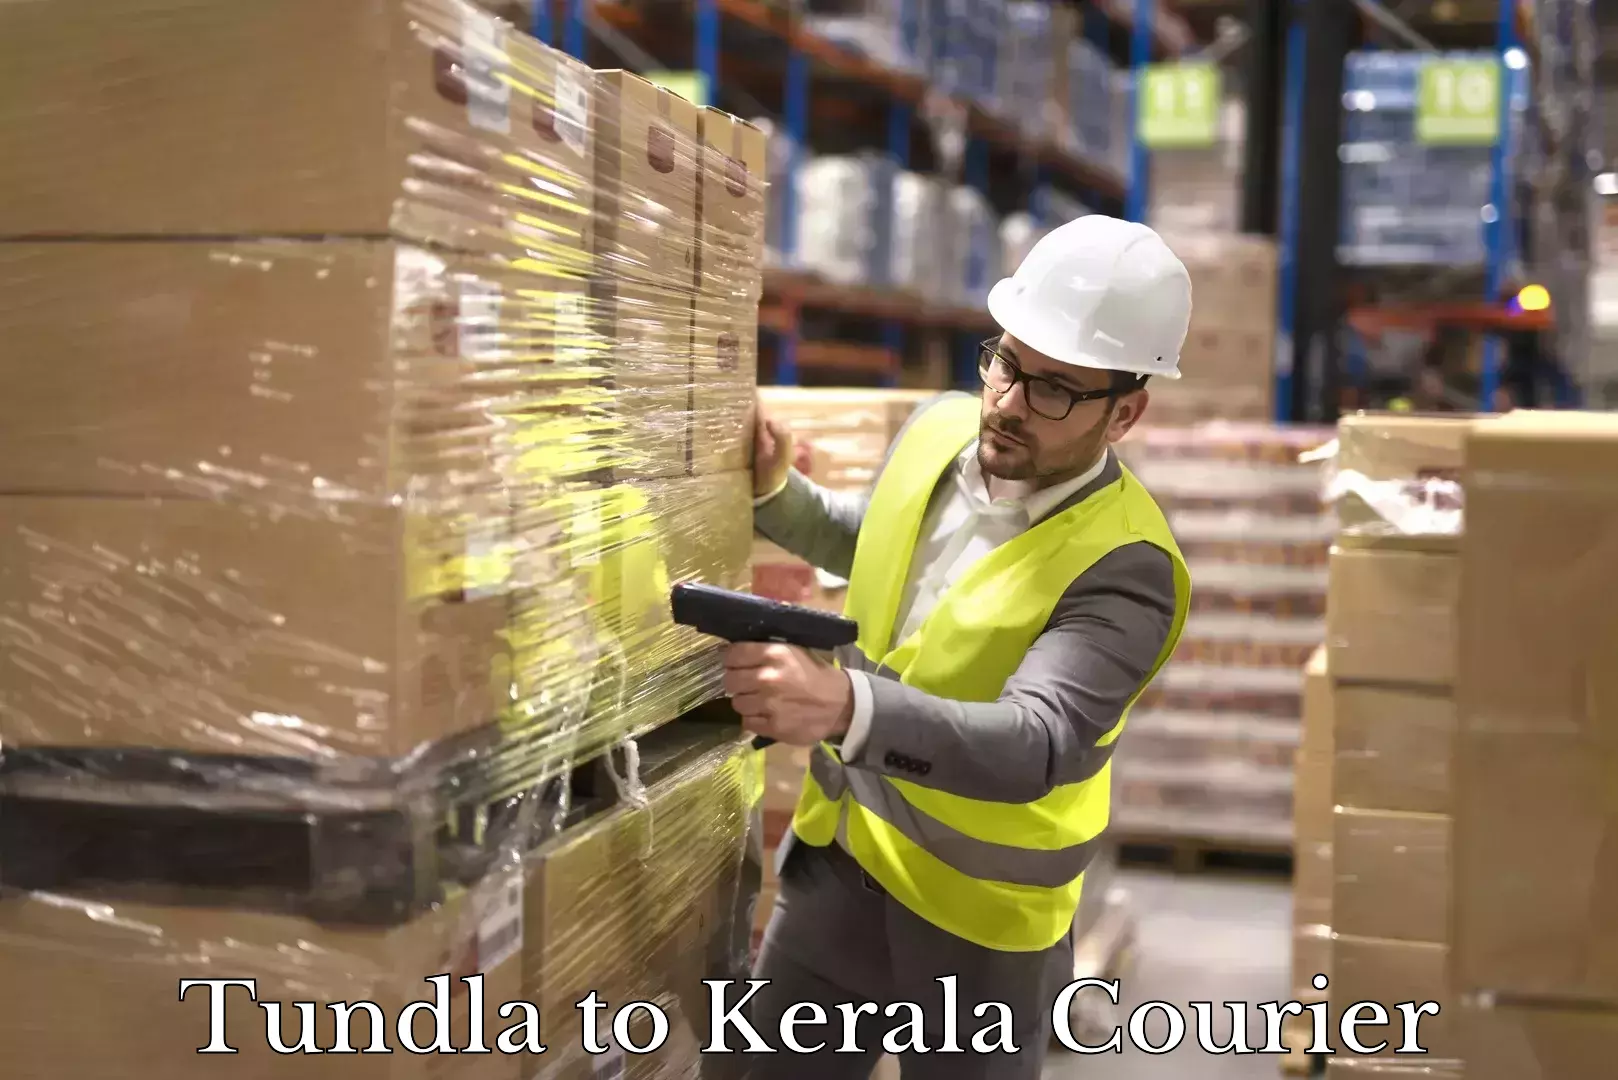 Next-day freight services Tundla to Kerala